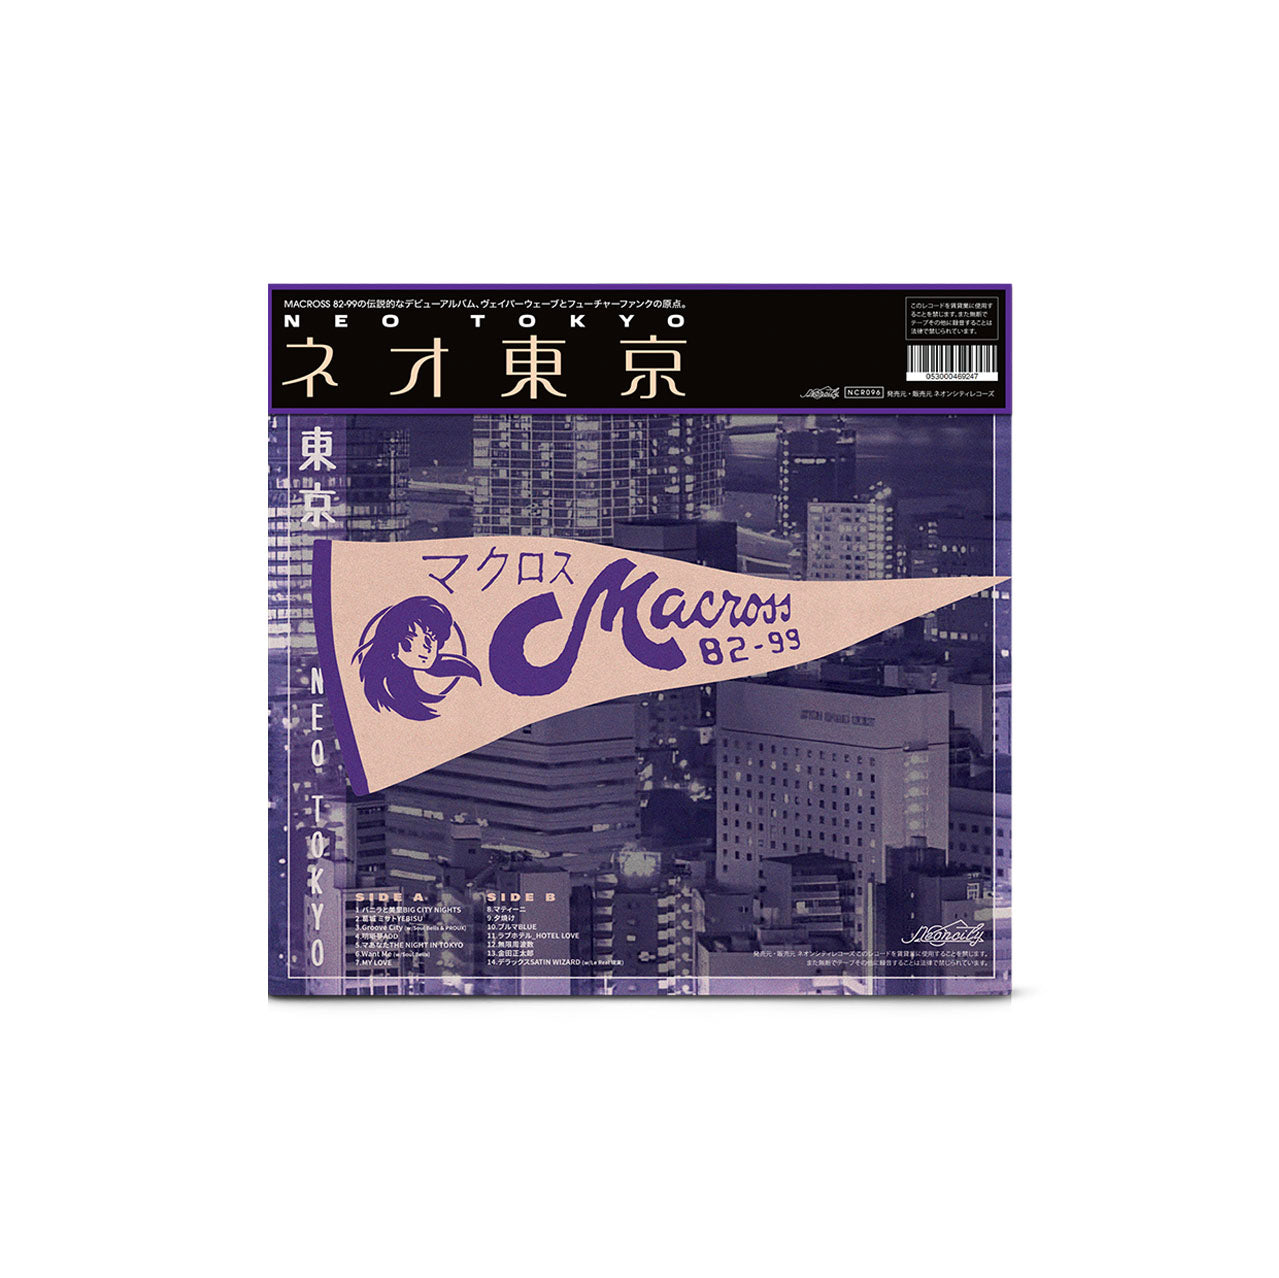 [Pre-order] Macross 82-99 - 'ネオ東京 (Neo Tokyo)' 12" Vinyl ("Highway Drift" colorway) - Neoncity Records